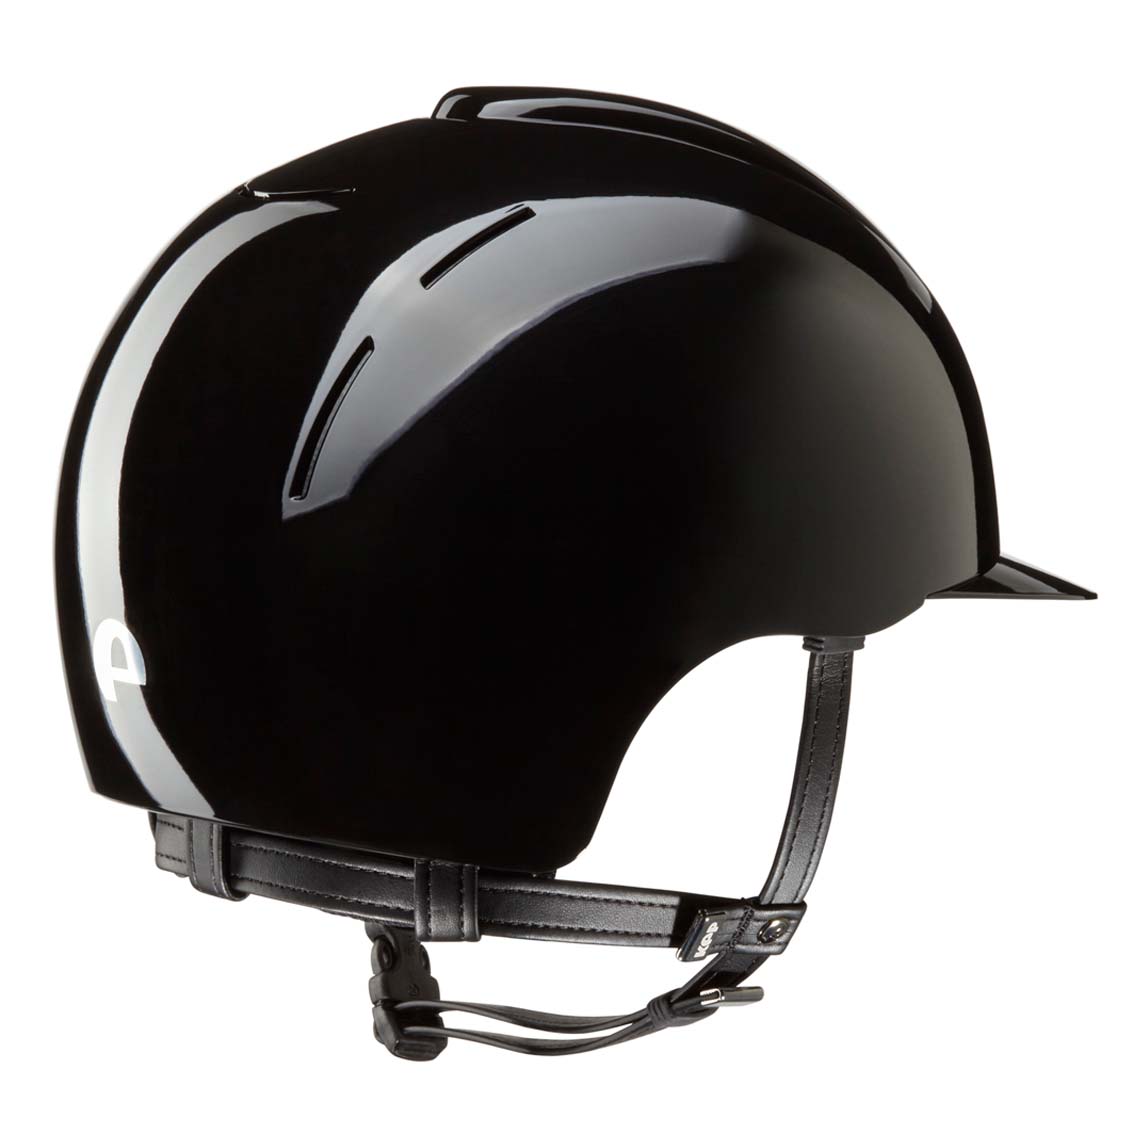 KEP ITALIA HELMETS & SAFETY Kep Smart Polish Helmet